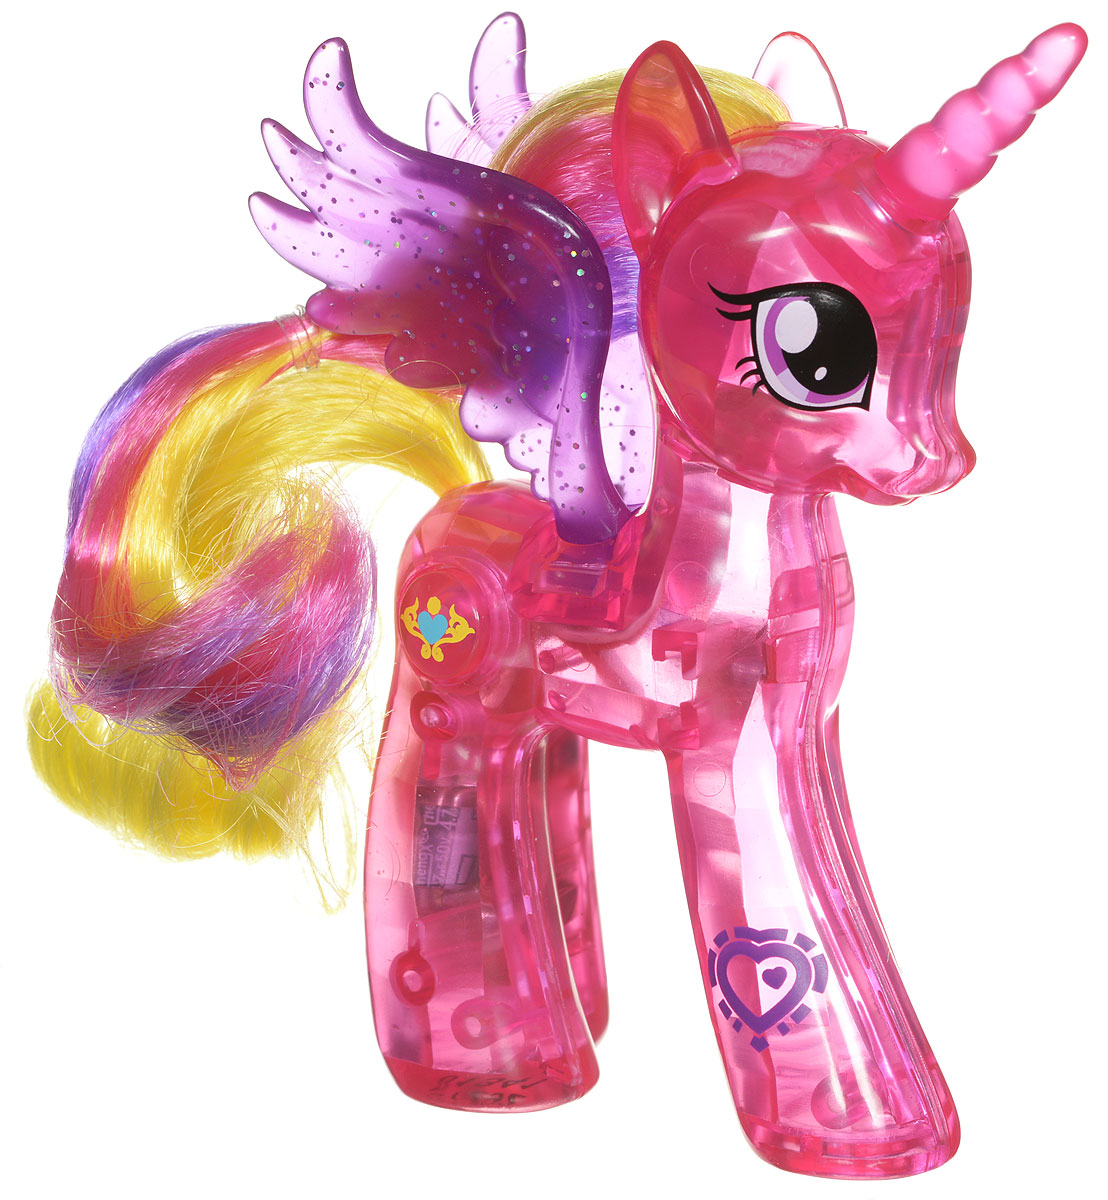 Pony код. My little Pony фигурка пони-модница принцесса Каденс. My little Pony игрушки принцесса Каденс. Пони Hasbro my little Pony принцесса Каденс. Игровой набор Hasbro пони-модница Princess Cadance b0361.